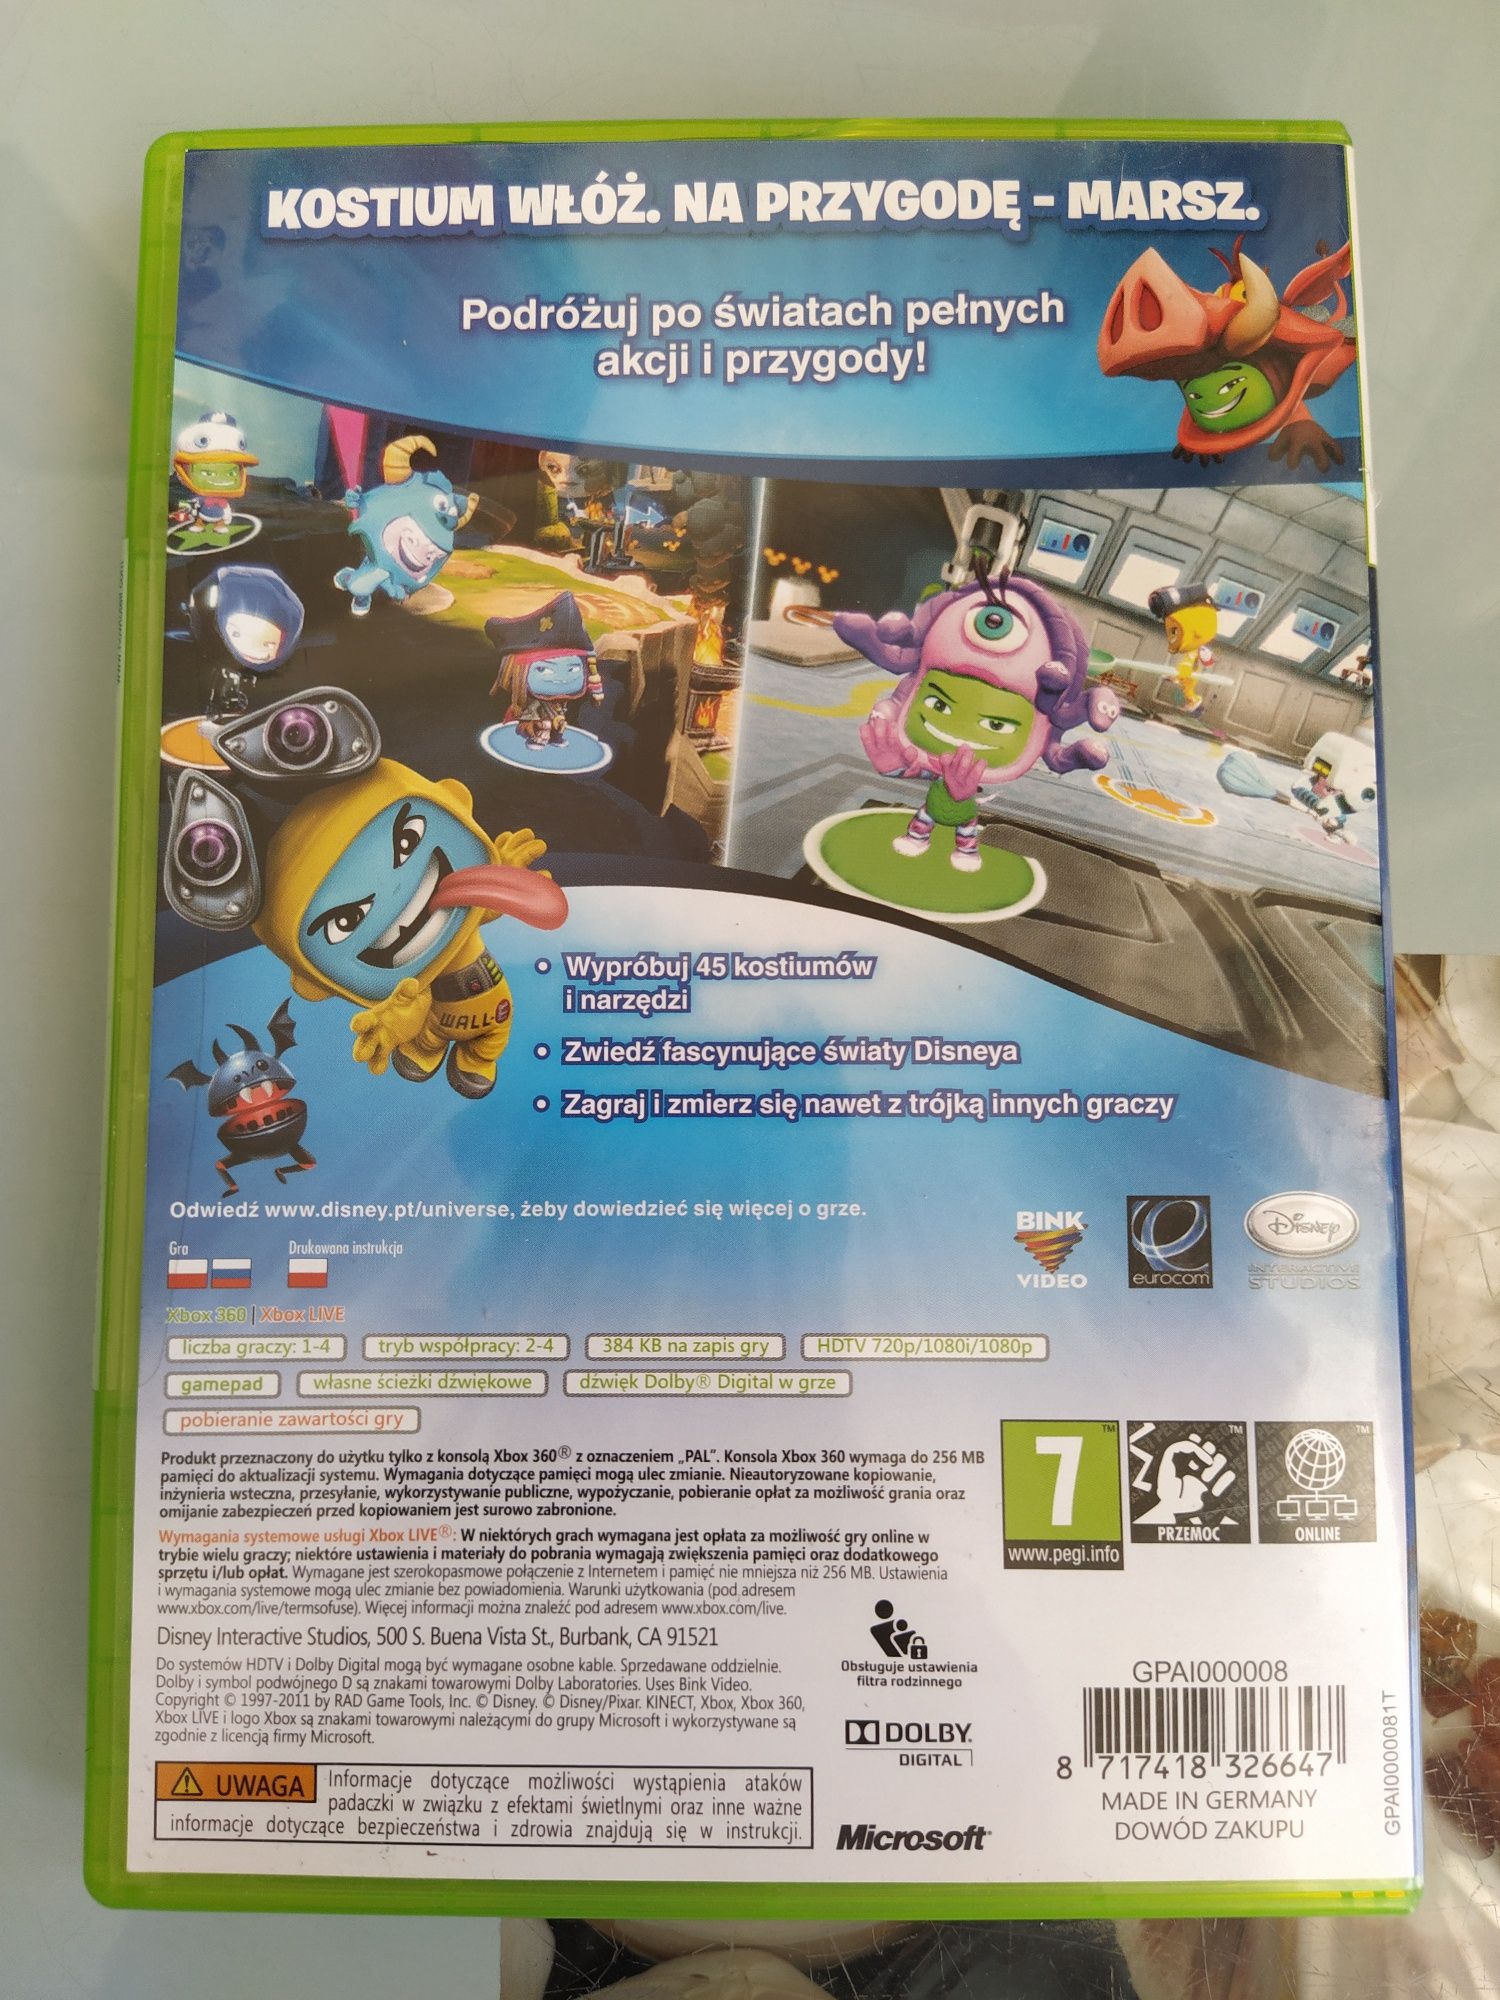 NOWA gra Xbox 360 Disney Universe polska wersja na prezent